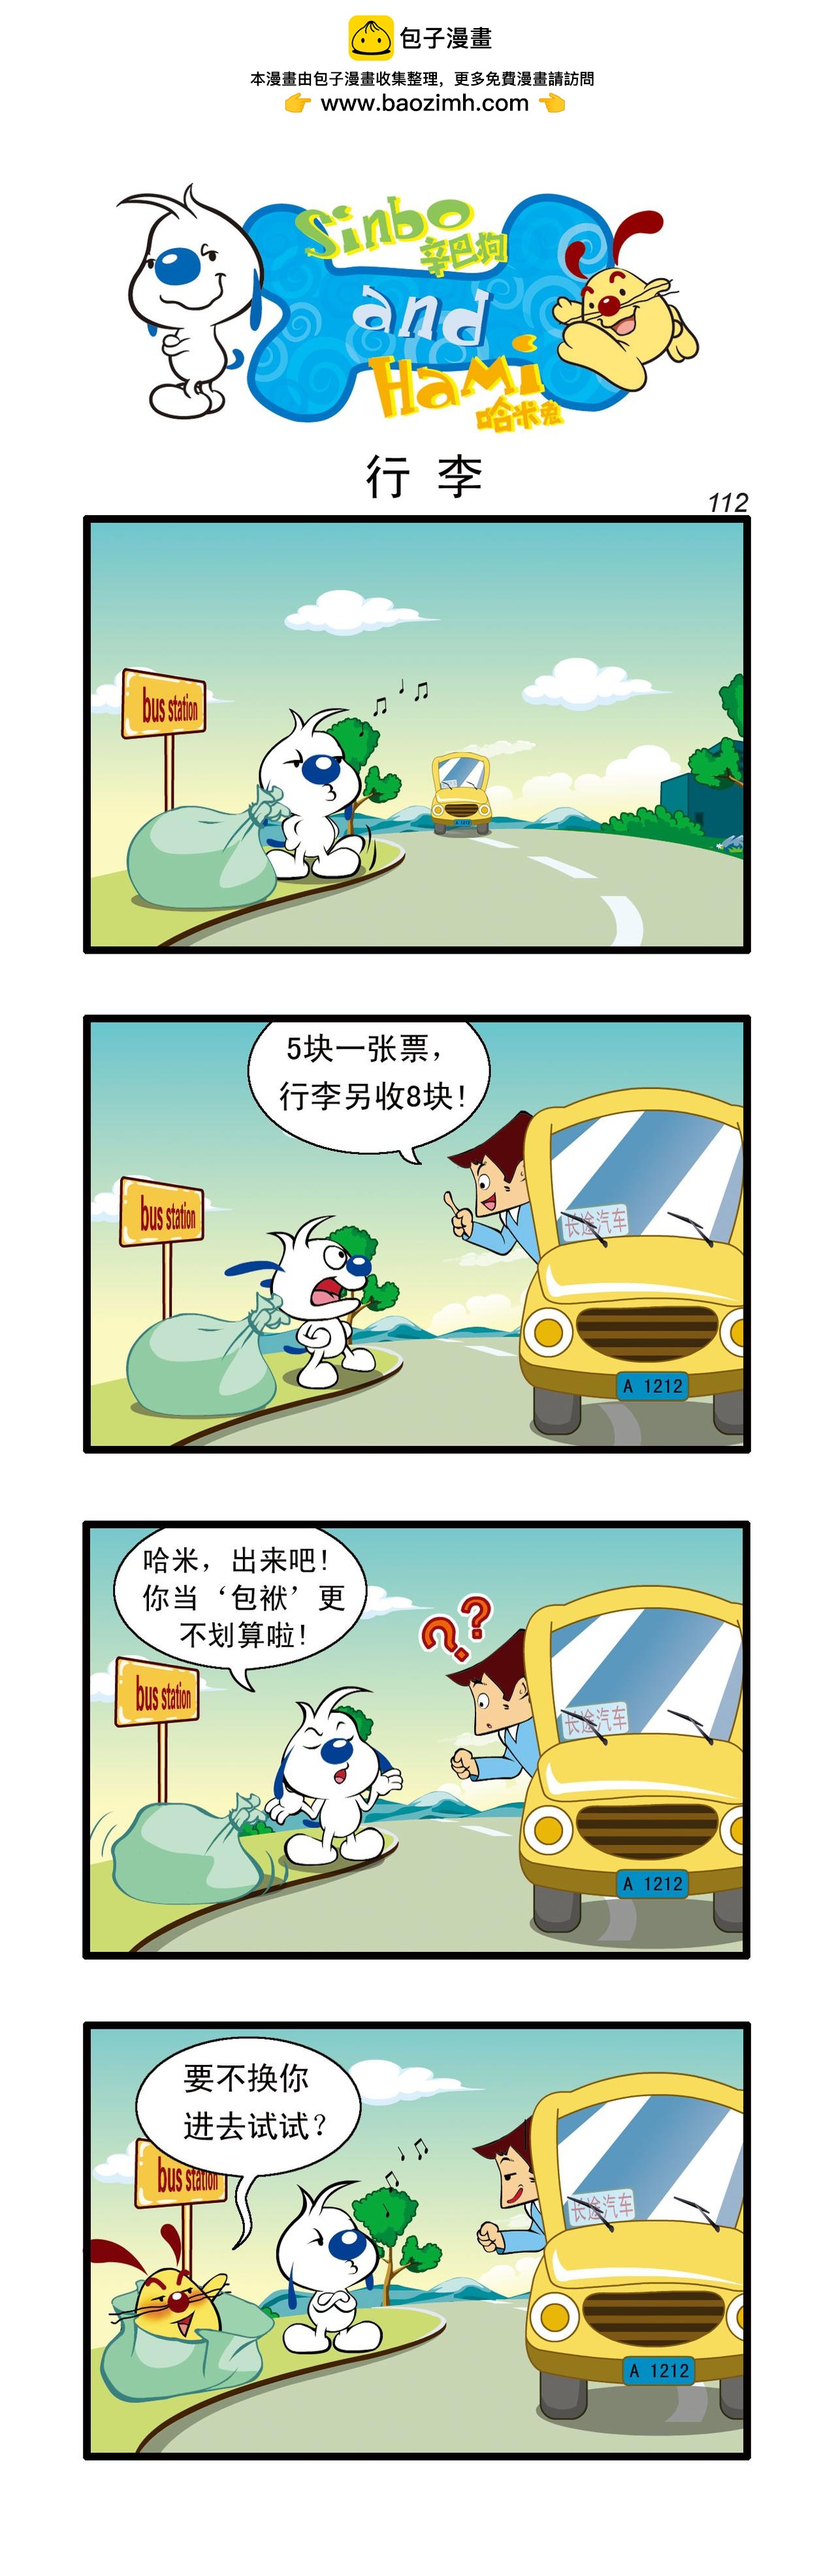 辛巴狗日常漫畫 - 多格33 - 1